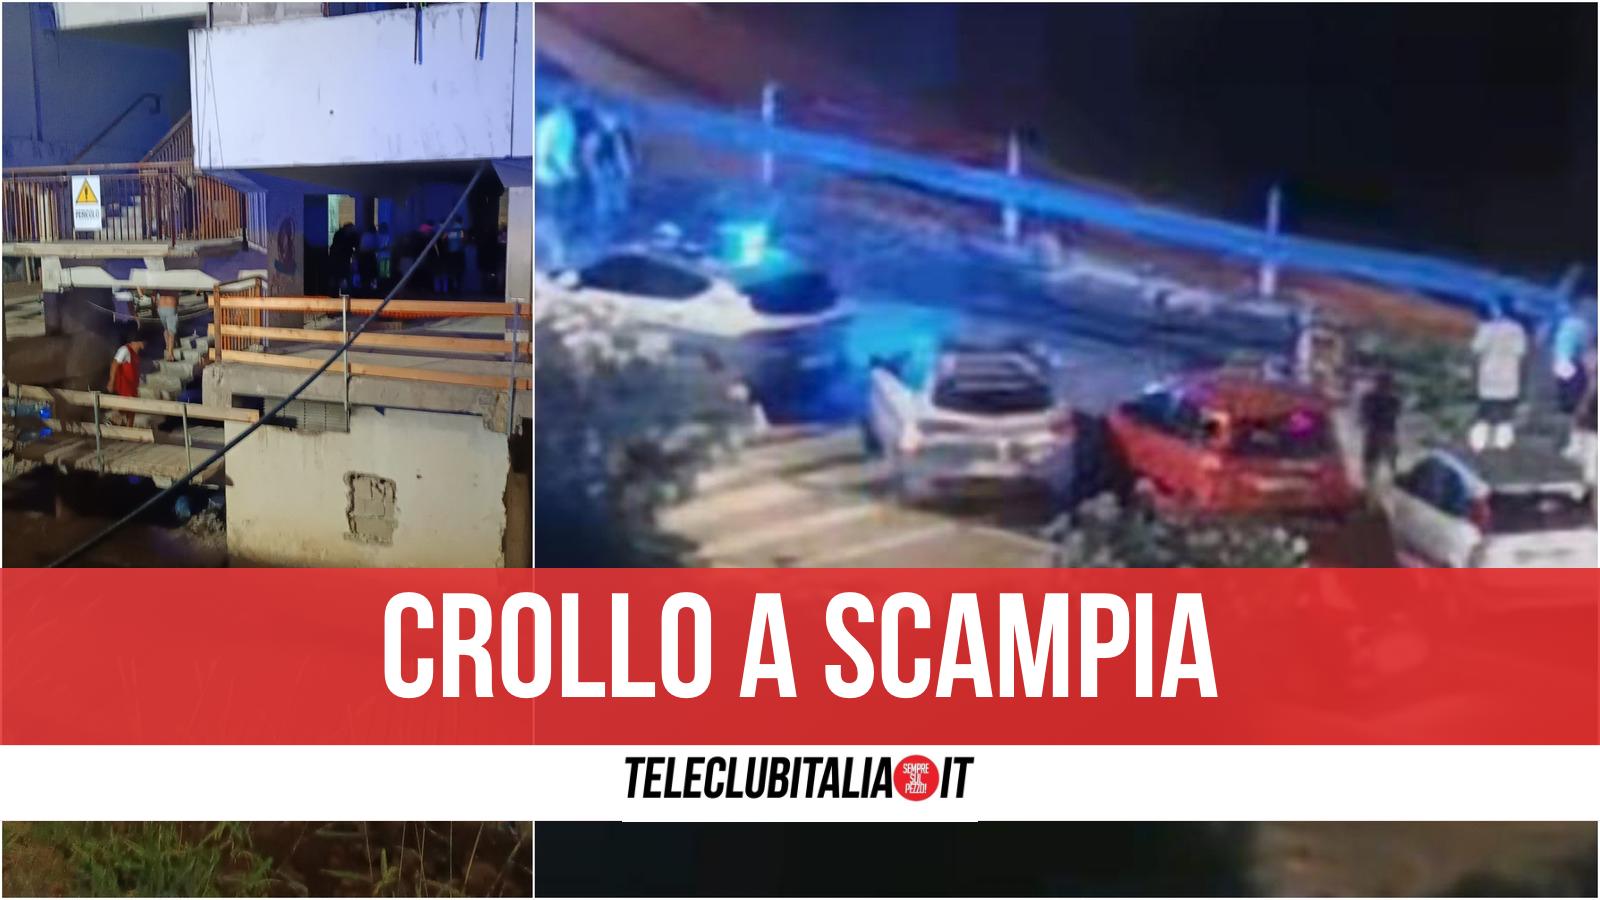 Dramma a Scampia, crolla ballatoio alla Vela Celeste: si temono vittime